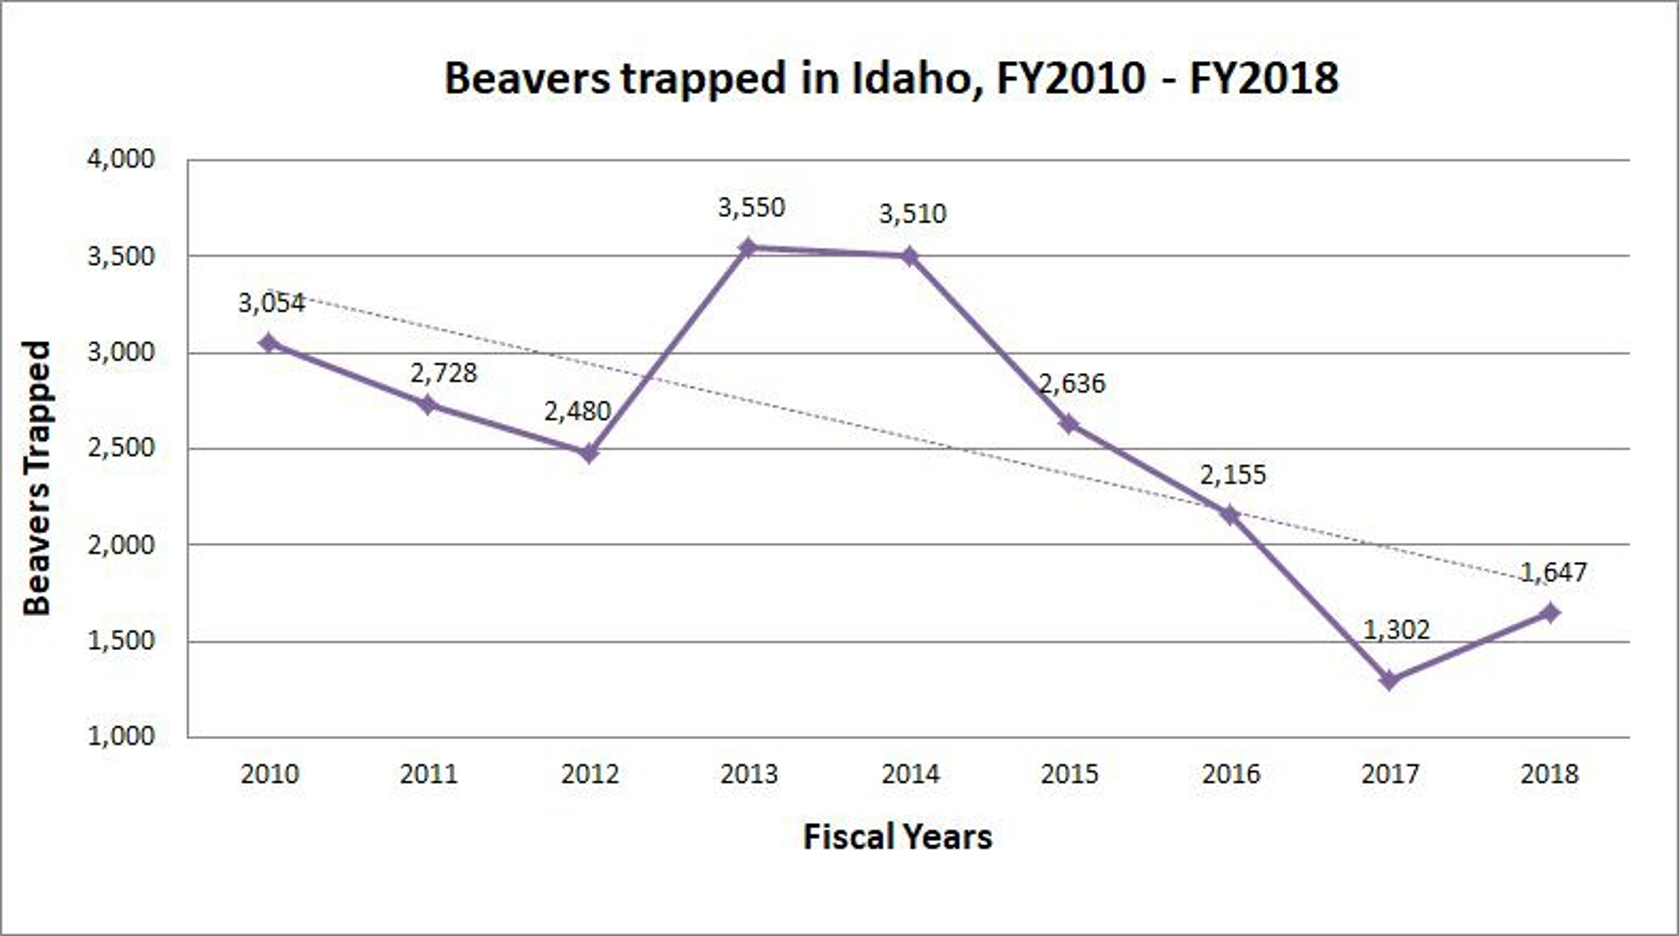 Graph: 2010, 3,054 beavers; 2011, 2,728 beavers; 2012 2,480 beavers; 2013 3,550 beavers; 2014, 3,510 beavers; 2015 2,636 beavers; 2016, 2,155 beavers; 2017, 1,302 beavers; 2018, 1,647 beavers